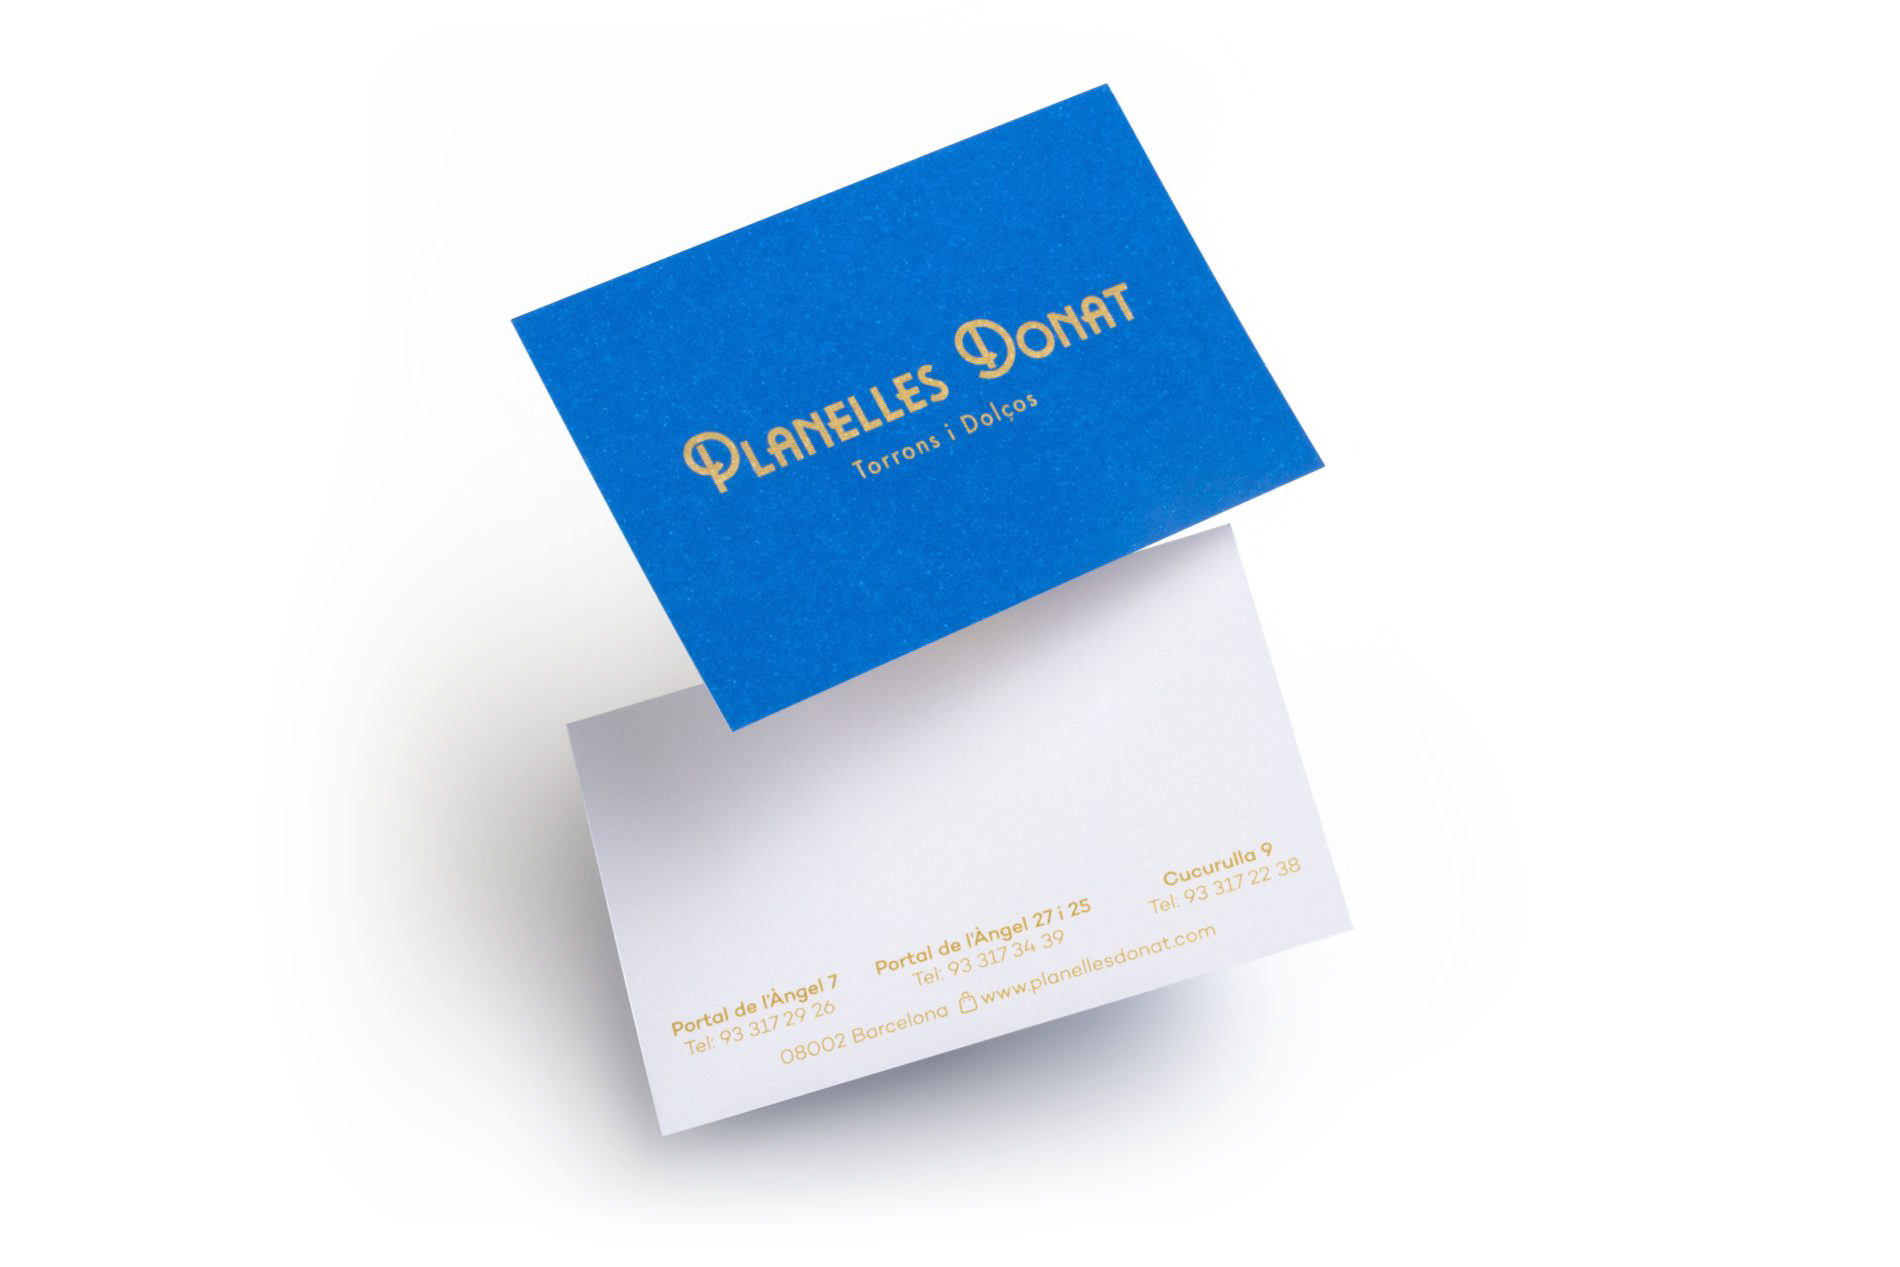 Planelles business cards